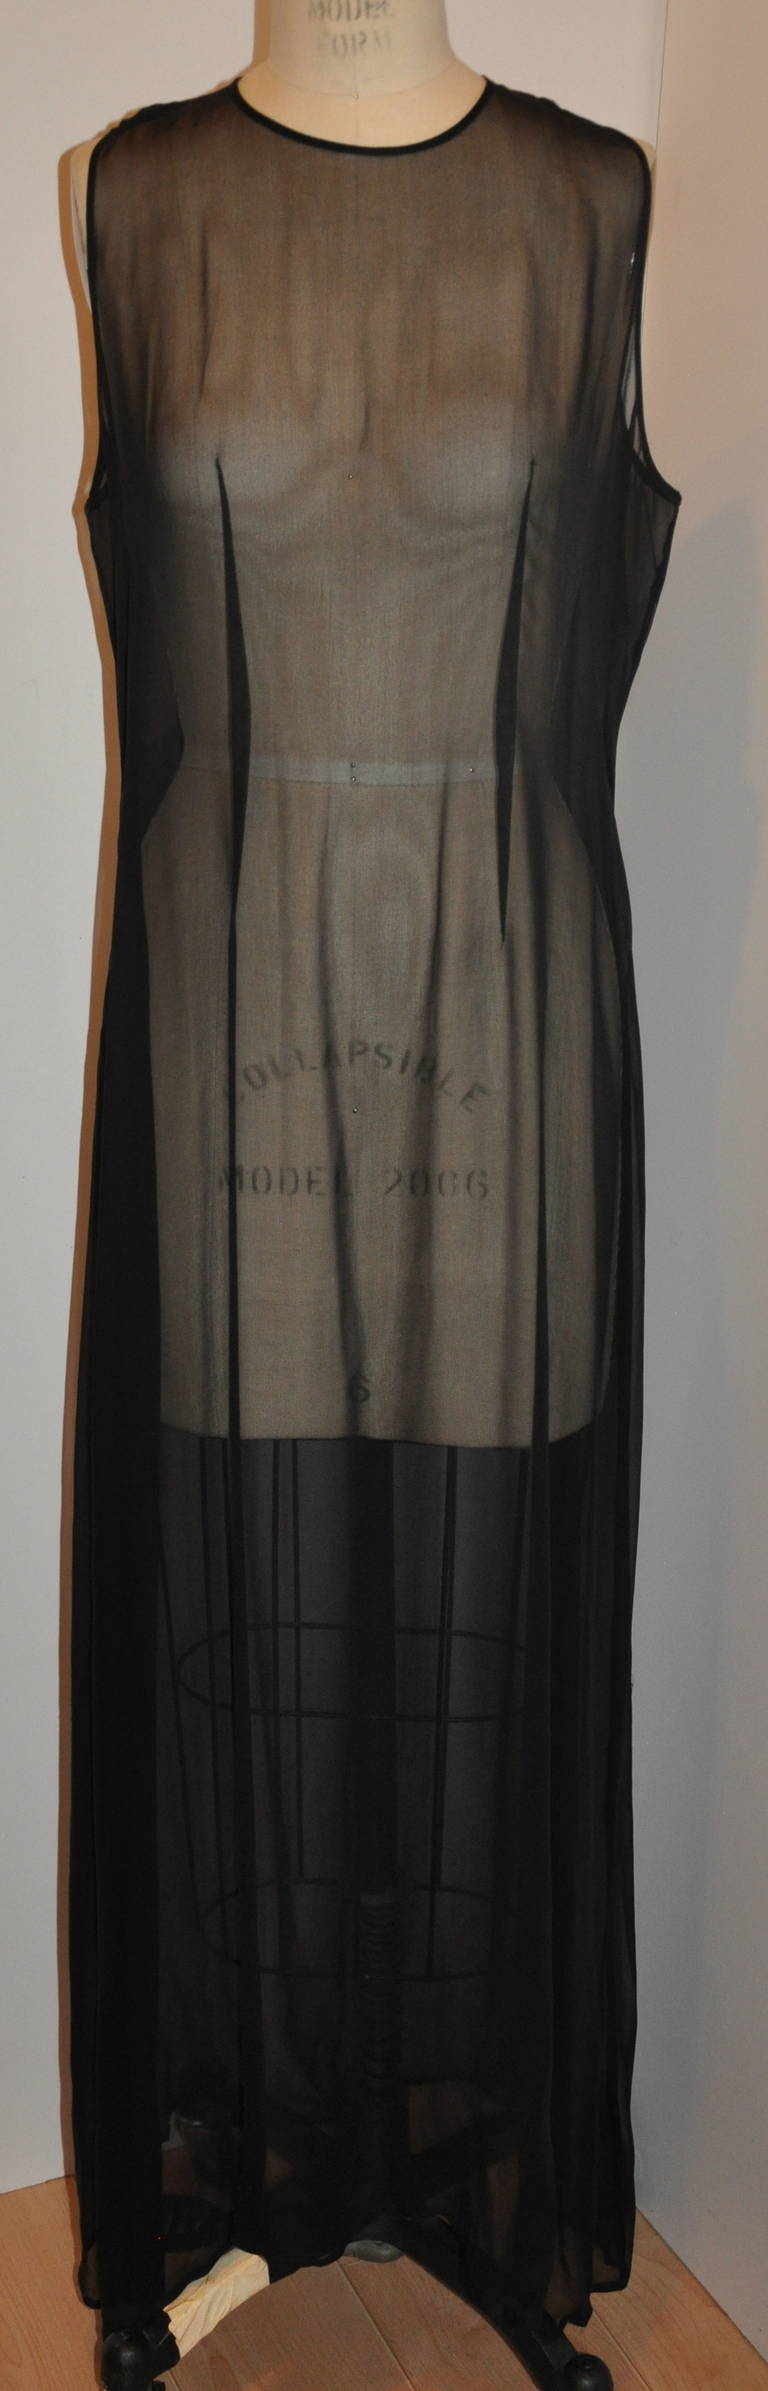 Morgan Le Fay schwarzer Seidenchiffon Zweiteiler kommt mit einem Maxi-Länge Tank Kleid, das 49 1/2 